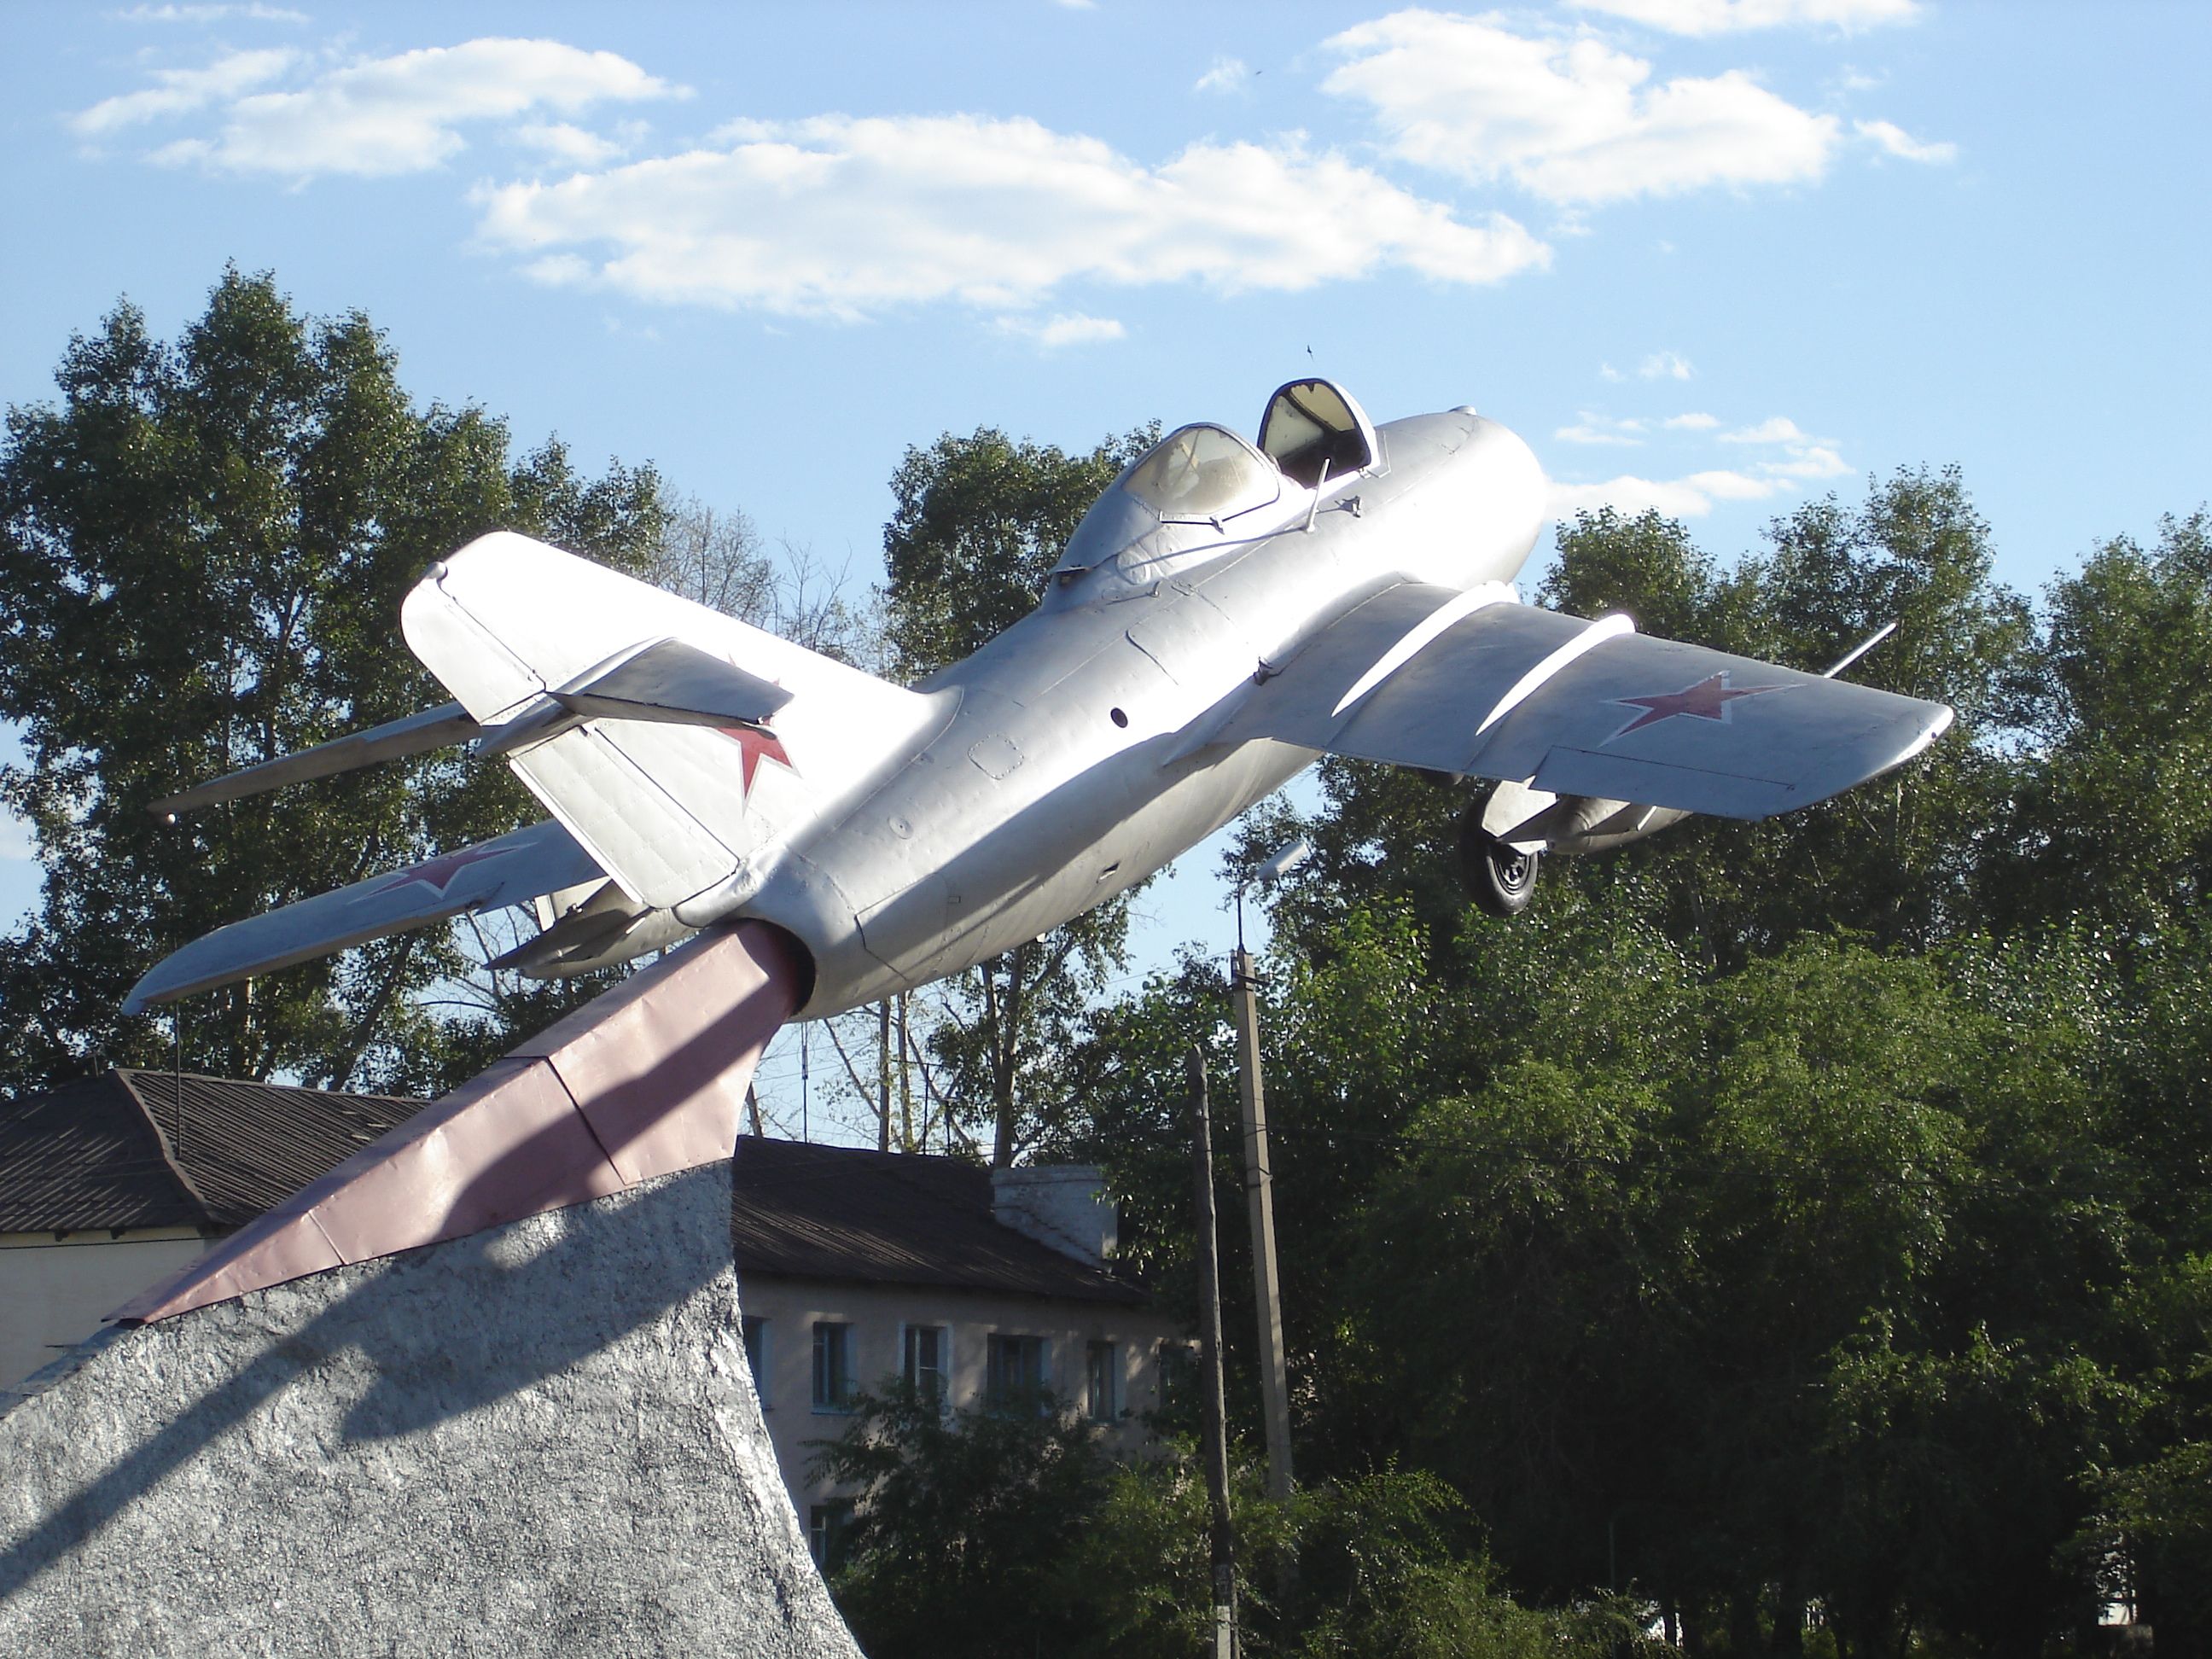 Памятник в честь шилкинцев, участников Великой Отечественной войны, включает самолет серии 